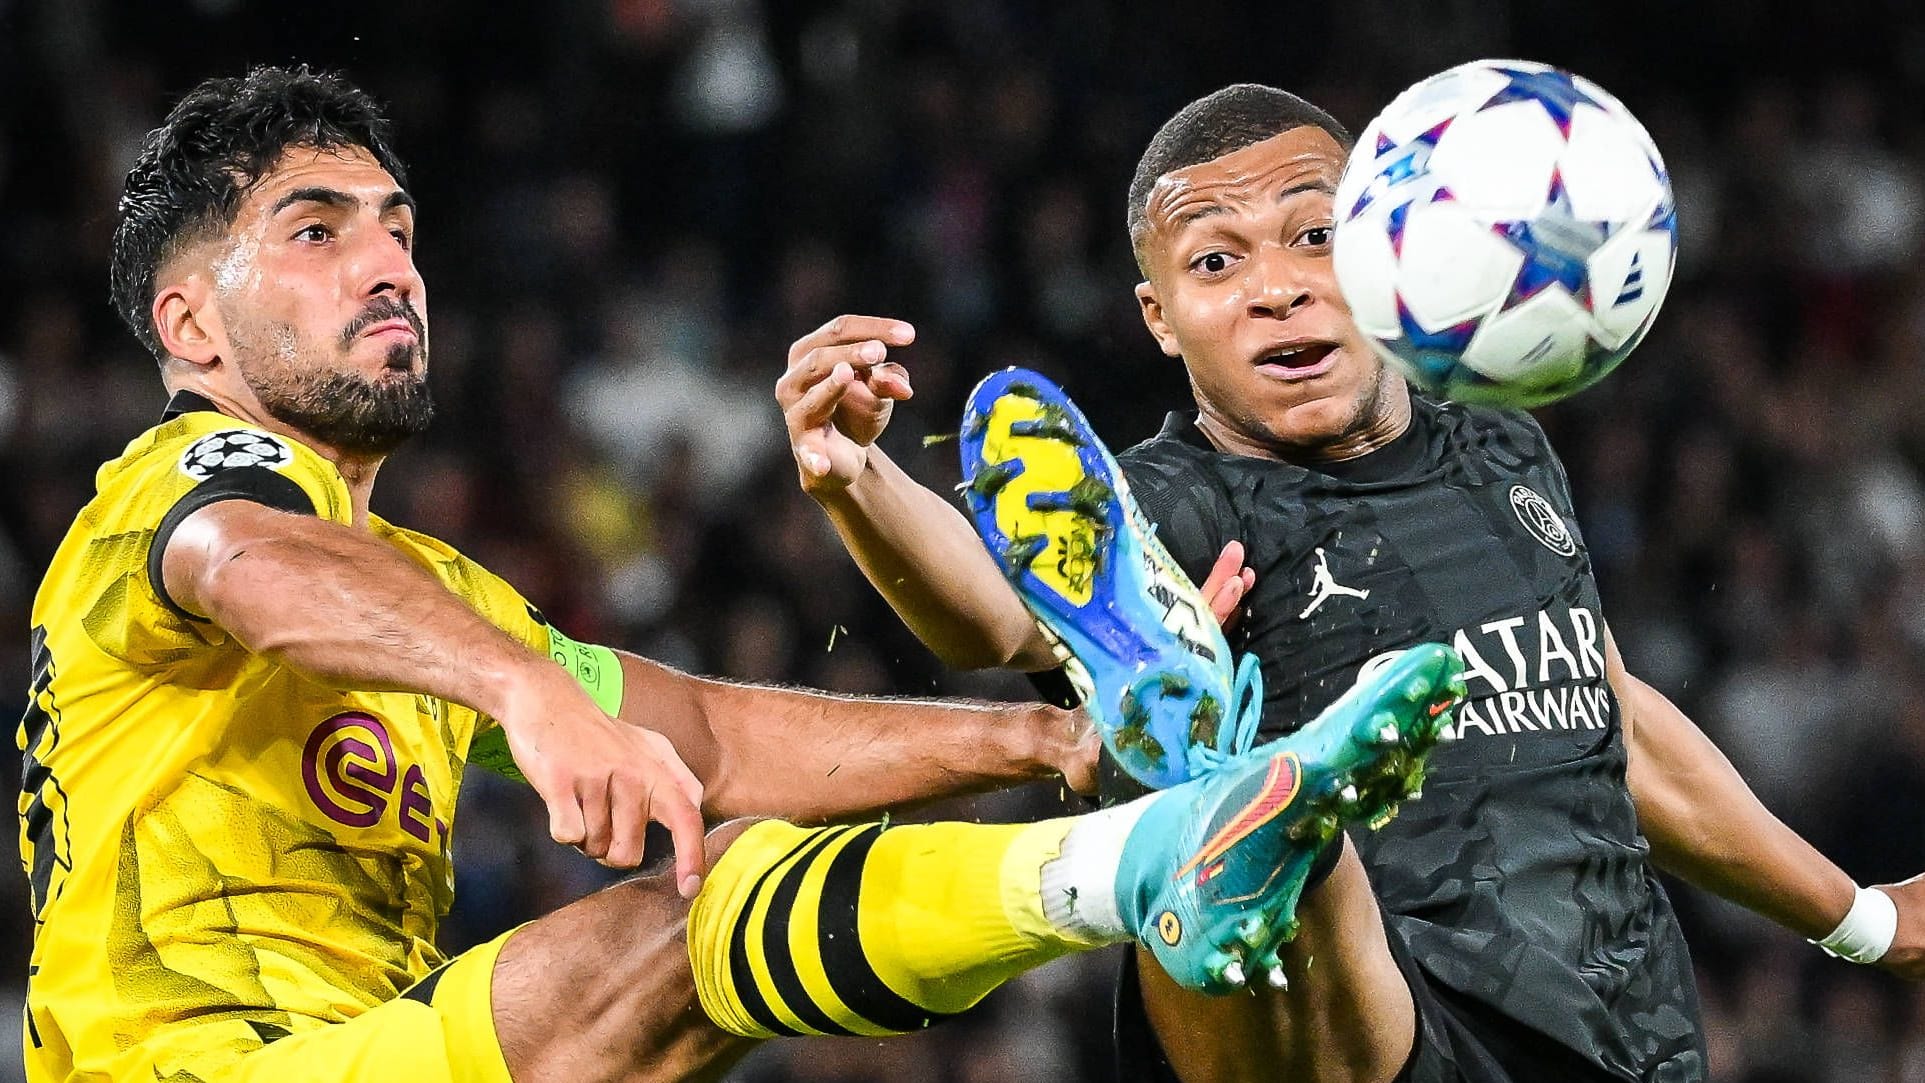 Champions League | Mbappé zu stark: Handelfmeter leitet BVB-Niederlage in Paris ein